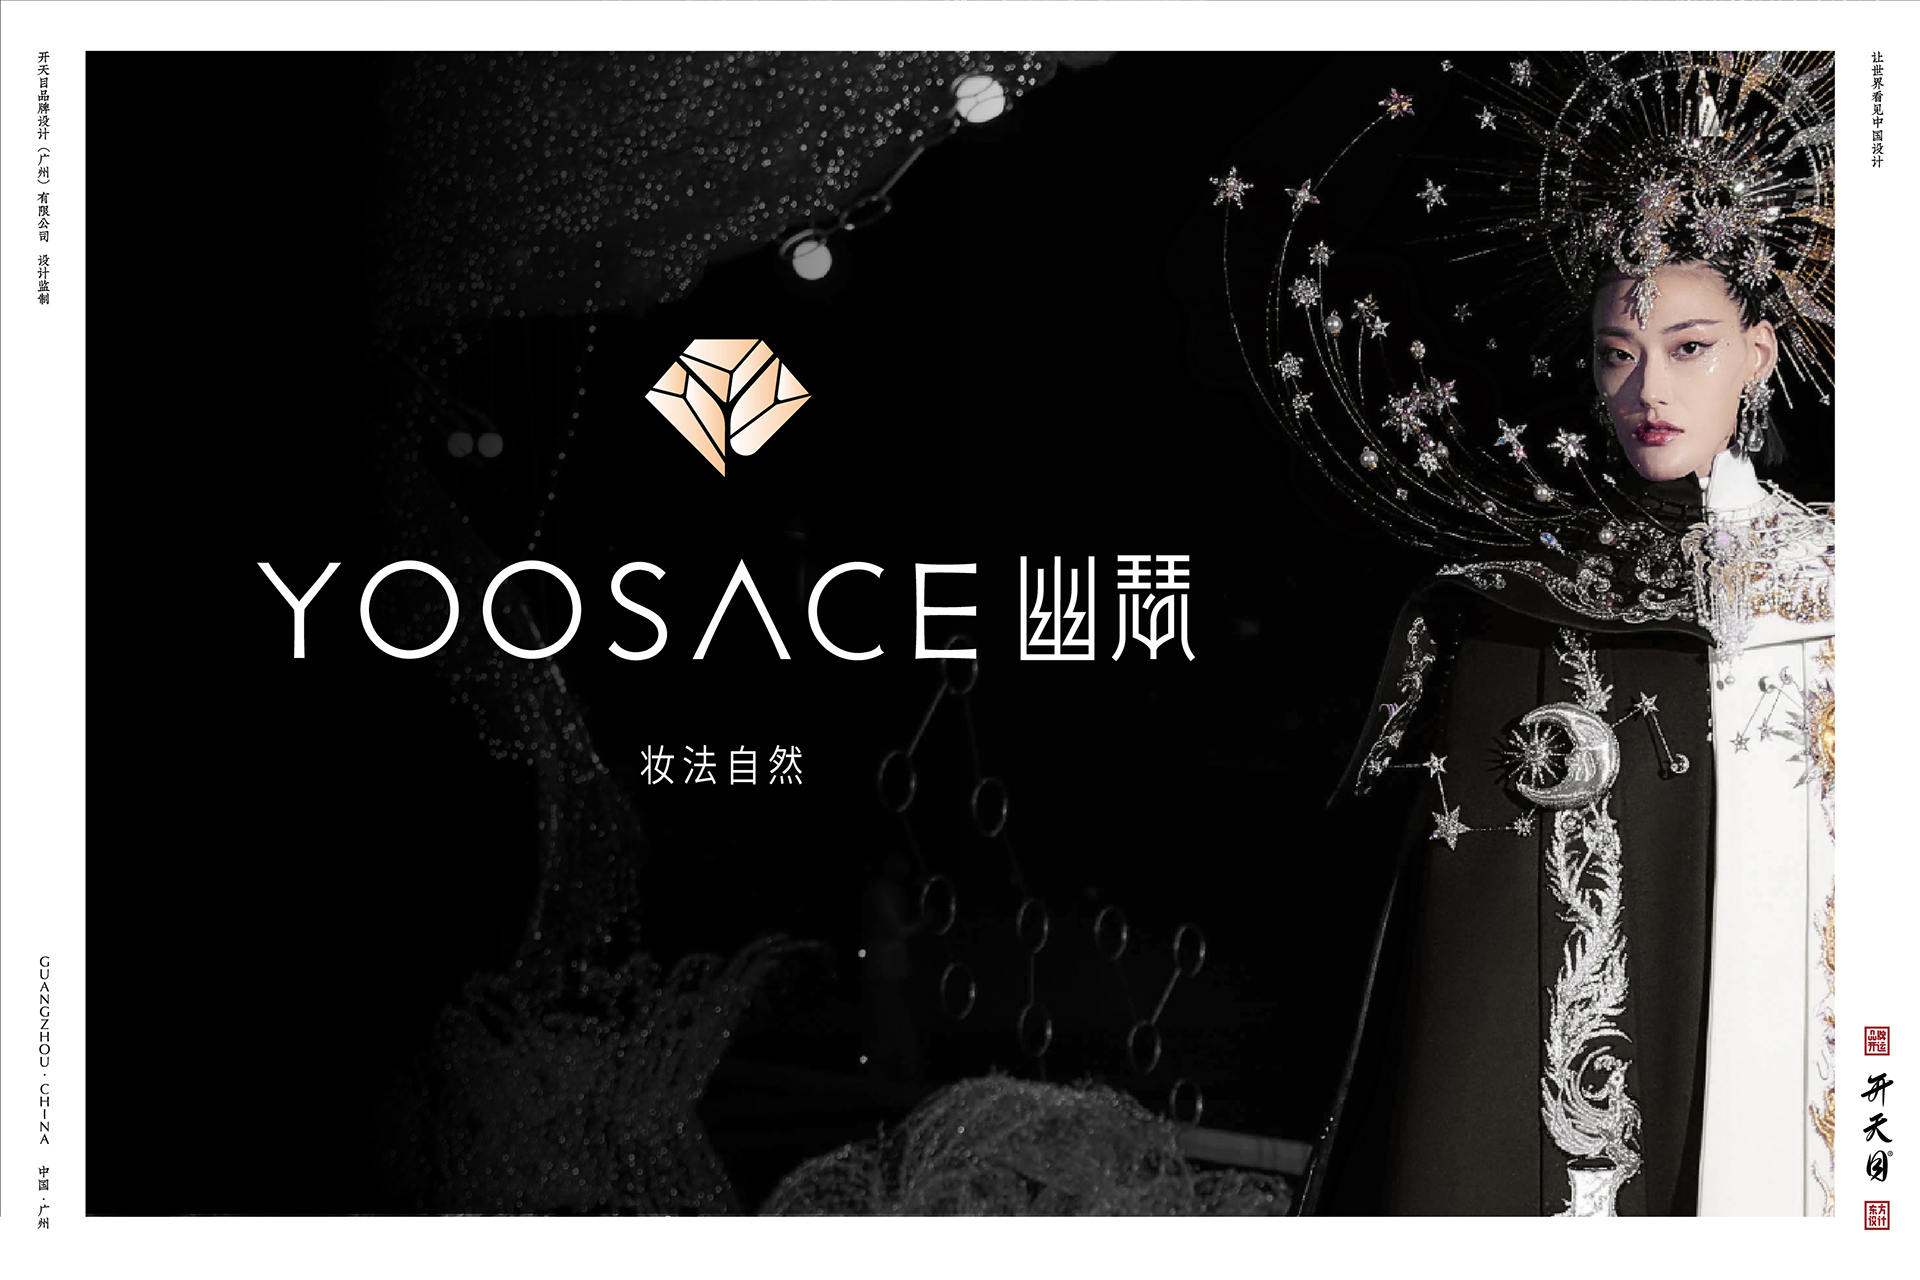 中国风化妆品品牌 LOGO设计 彩妆 国潮 自然